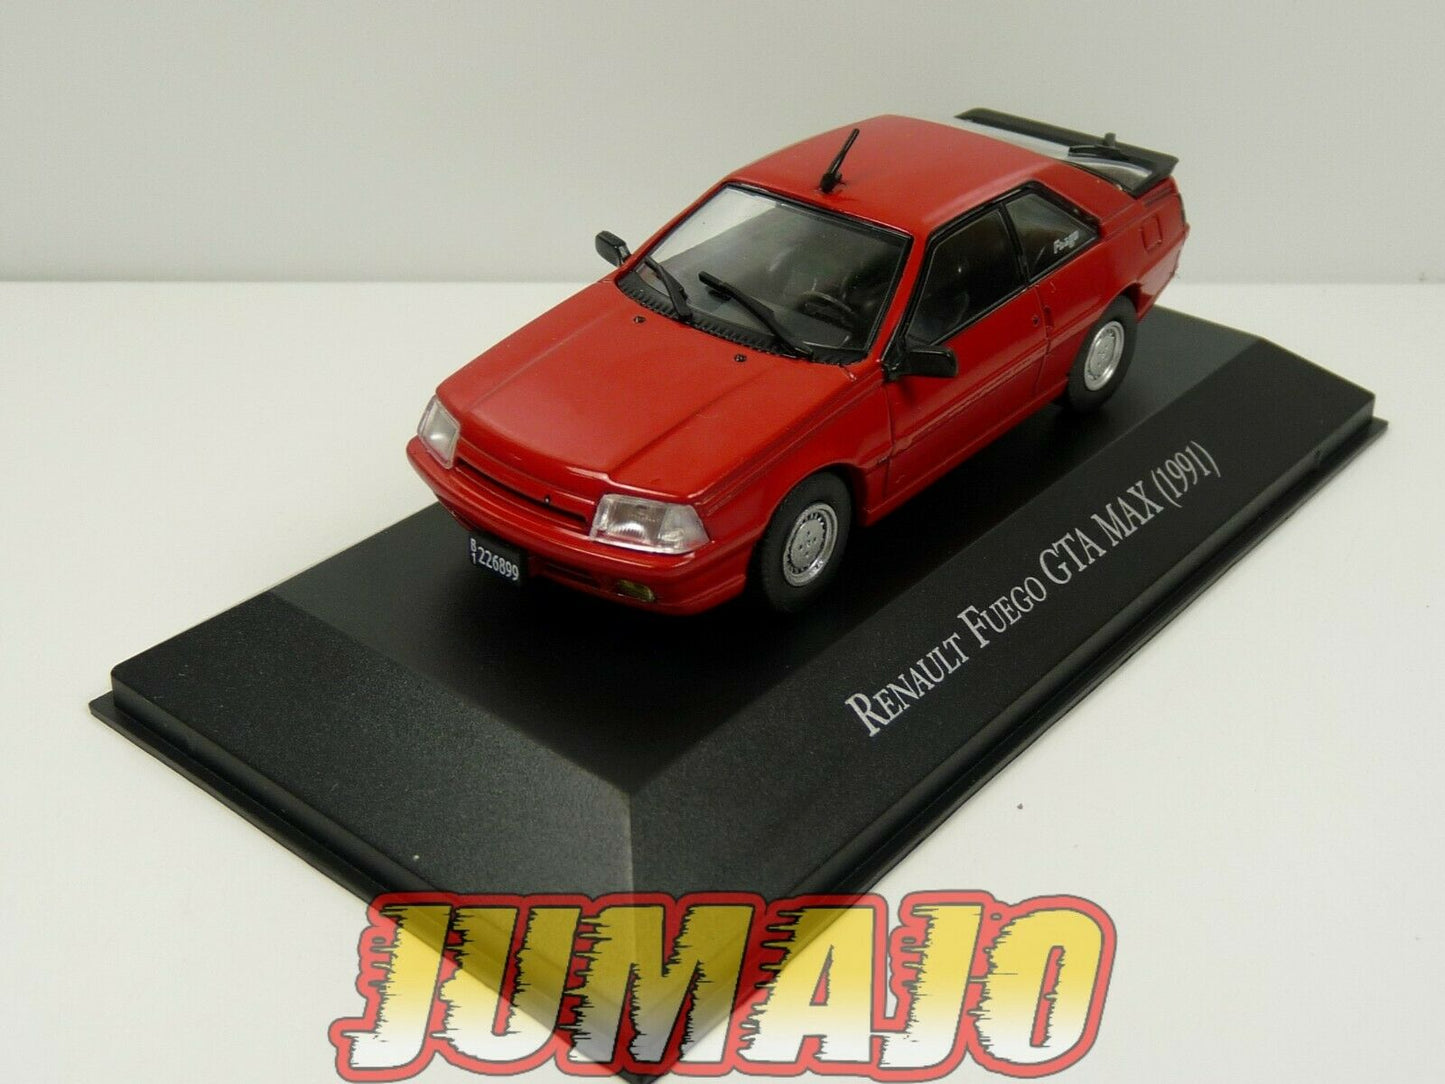 VOITURE Renault FUEGO GTA Max 1991 1/43 SALVAT Inolvidables 80/90